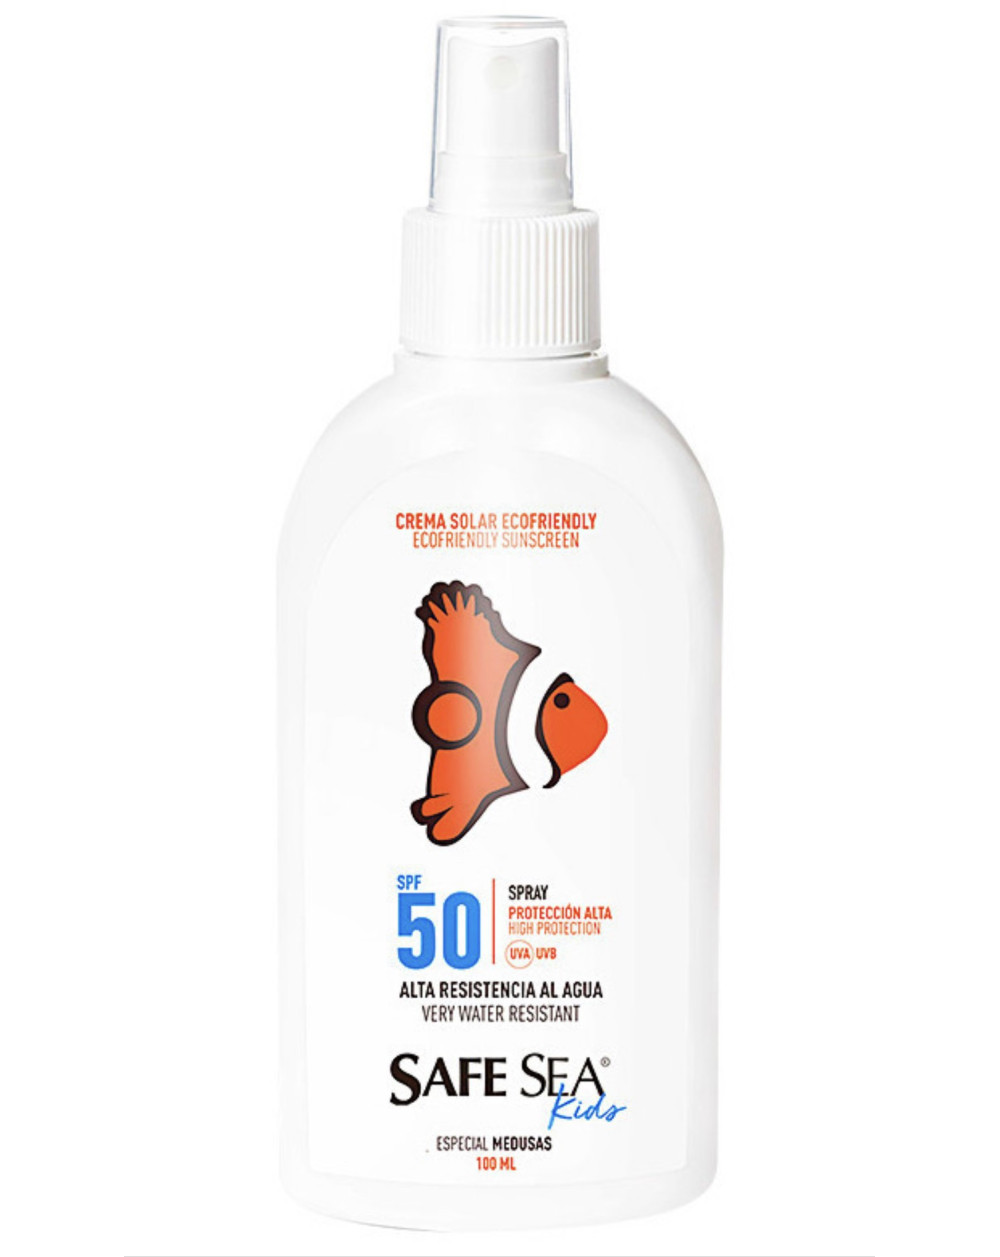 Safe Sea Crema Solar Especial Medusas SPF50+  100ml